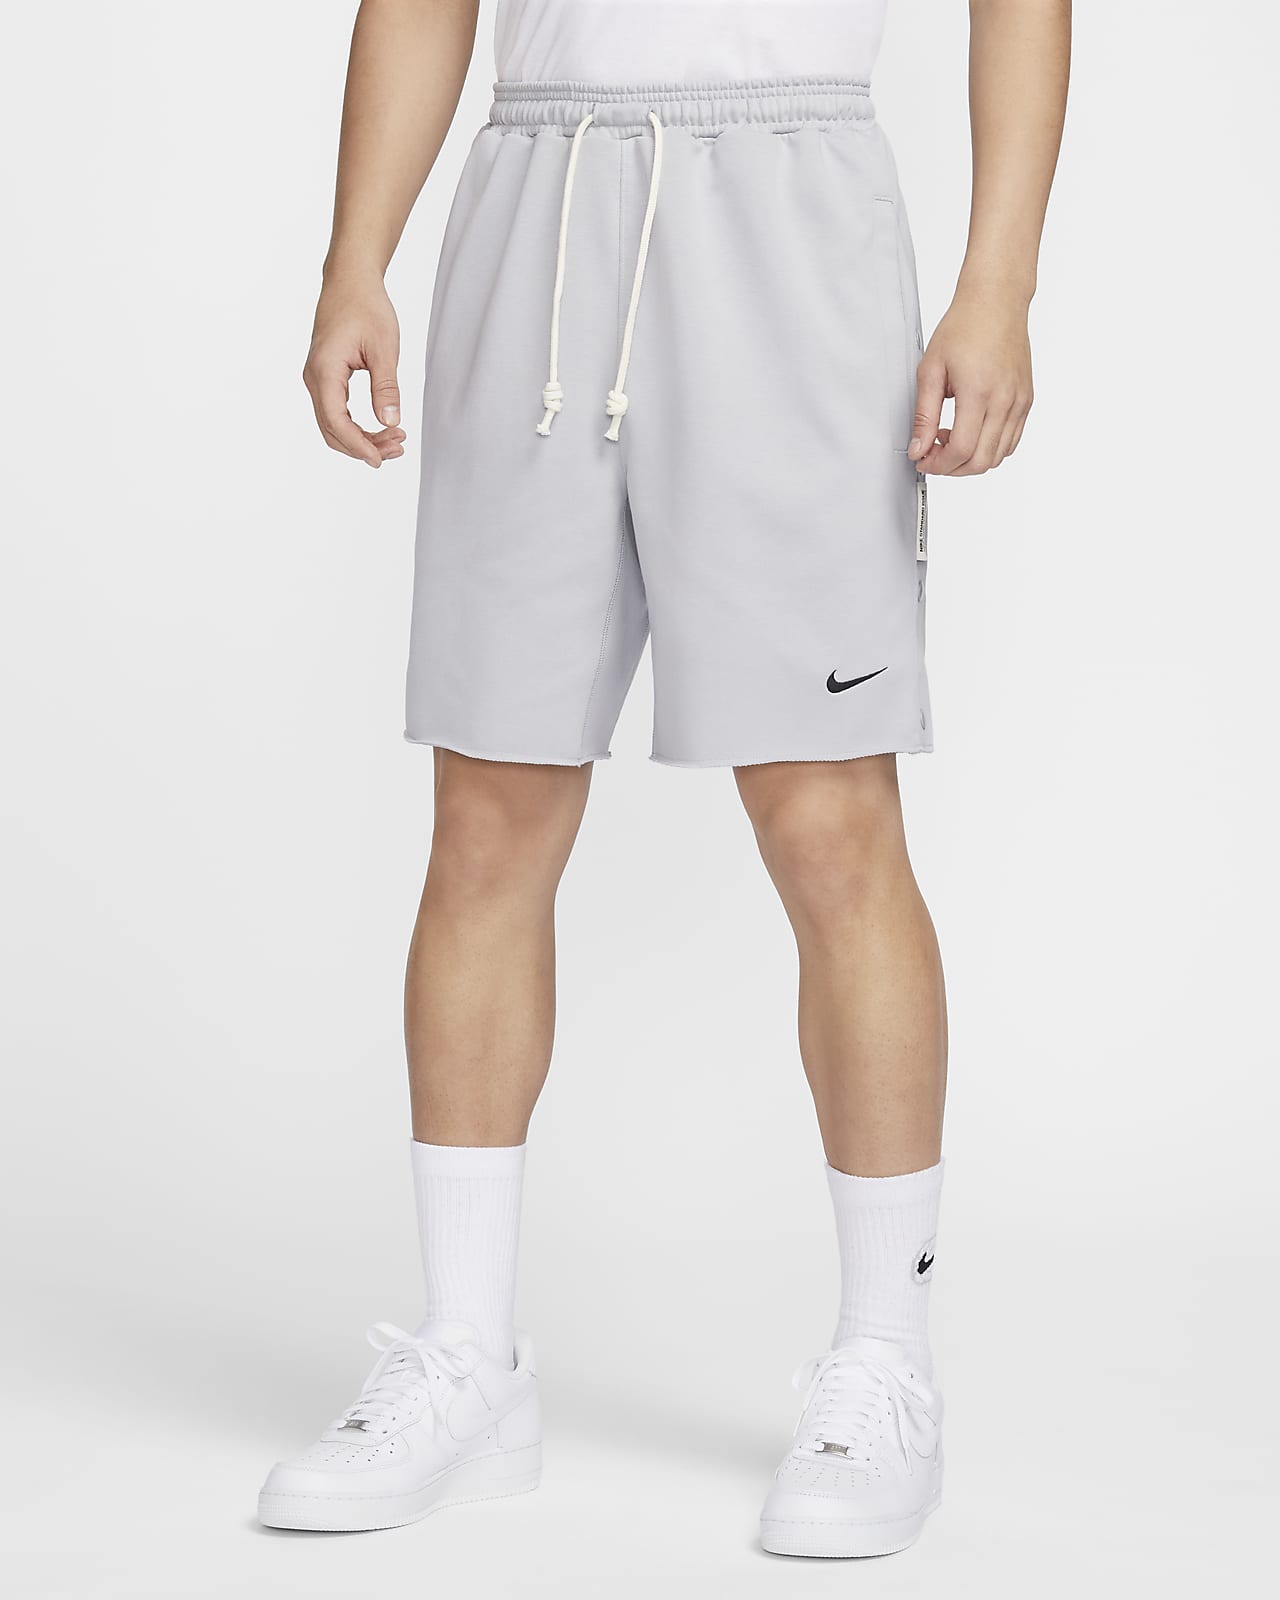 Nike Standard Issue Dri-FIT 男子速干篮球短裤